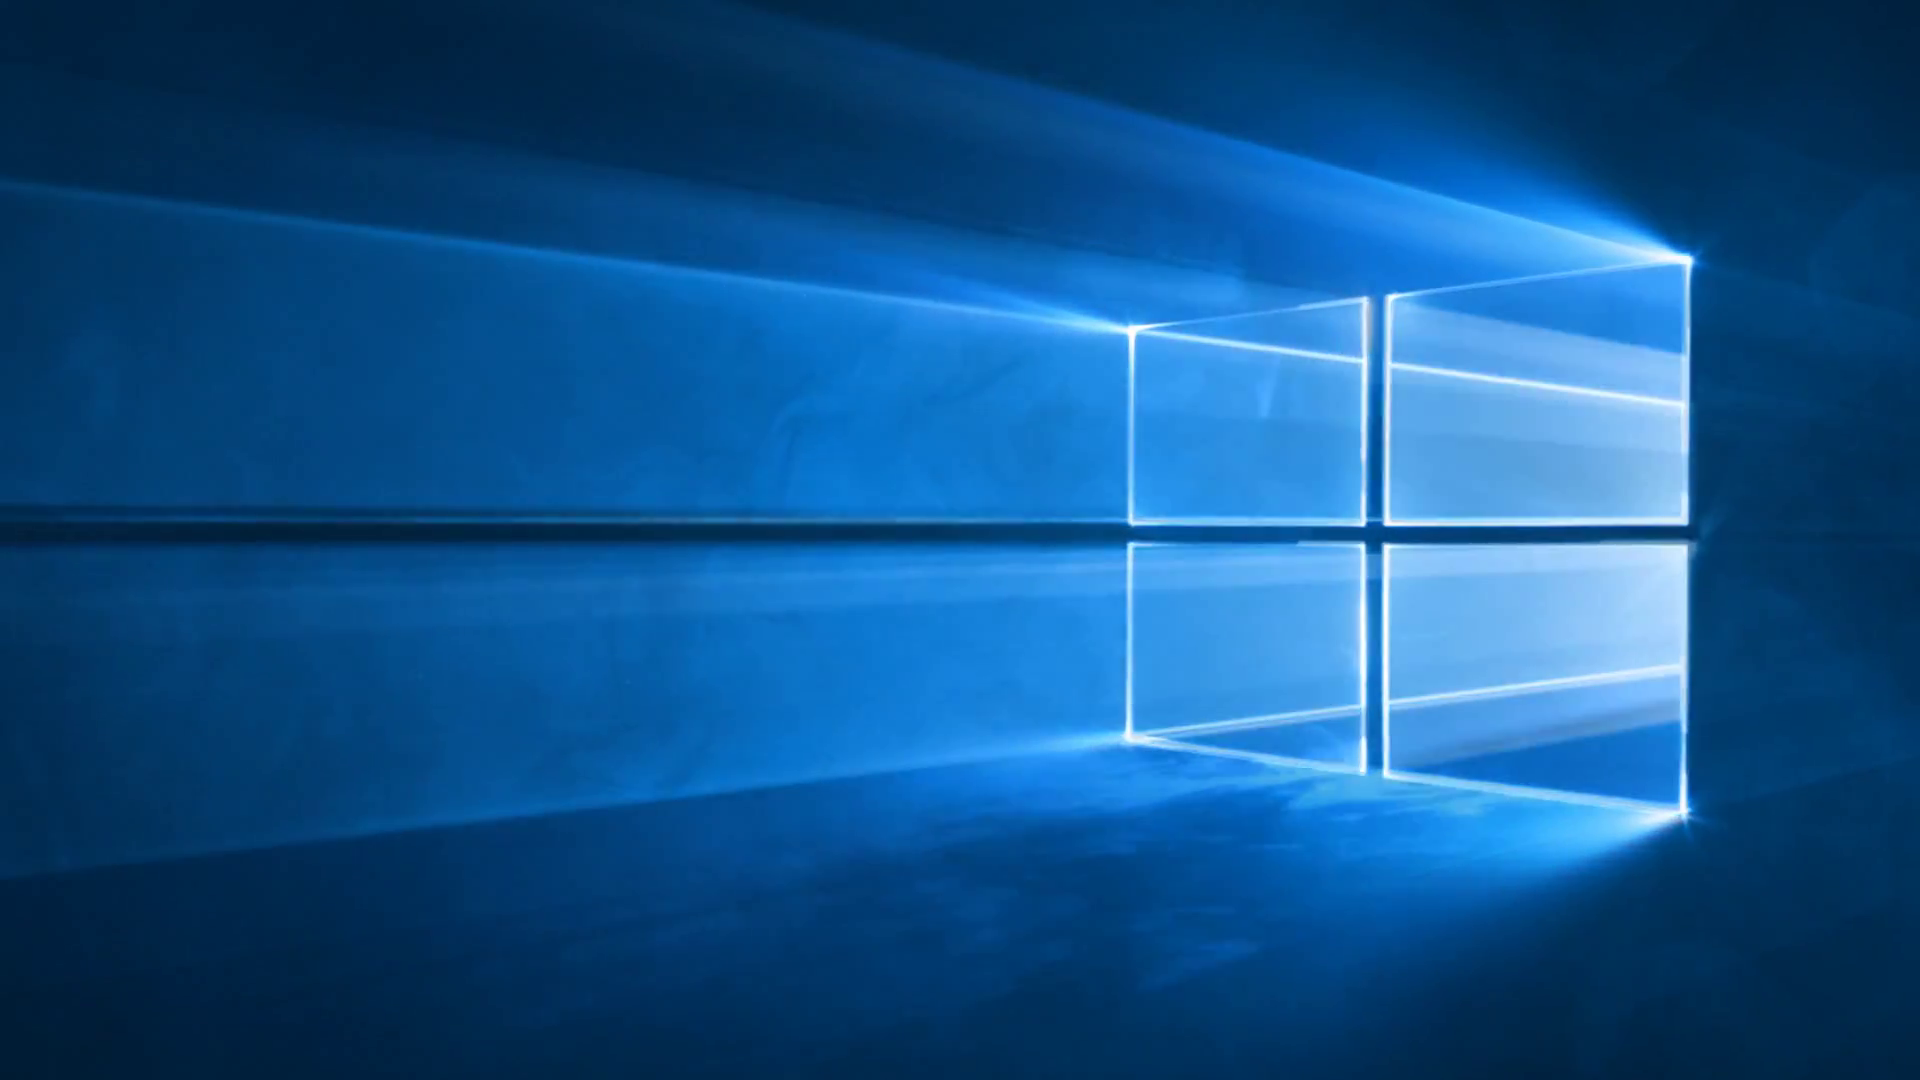 Windows 10 un portail vers lespace pour le fond dcran par